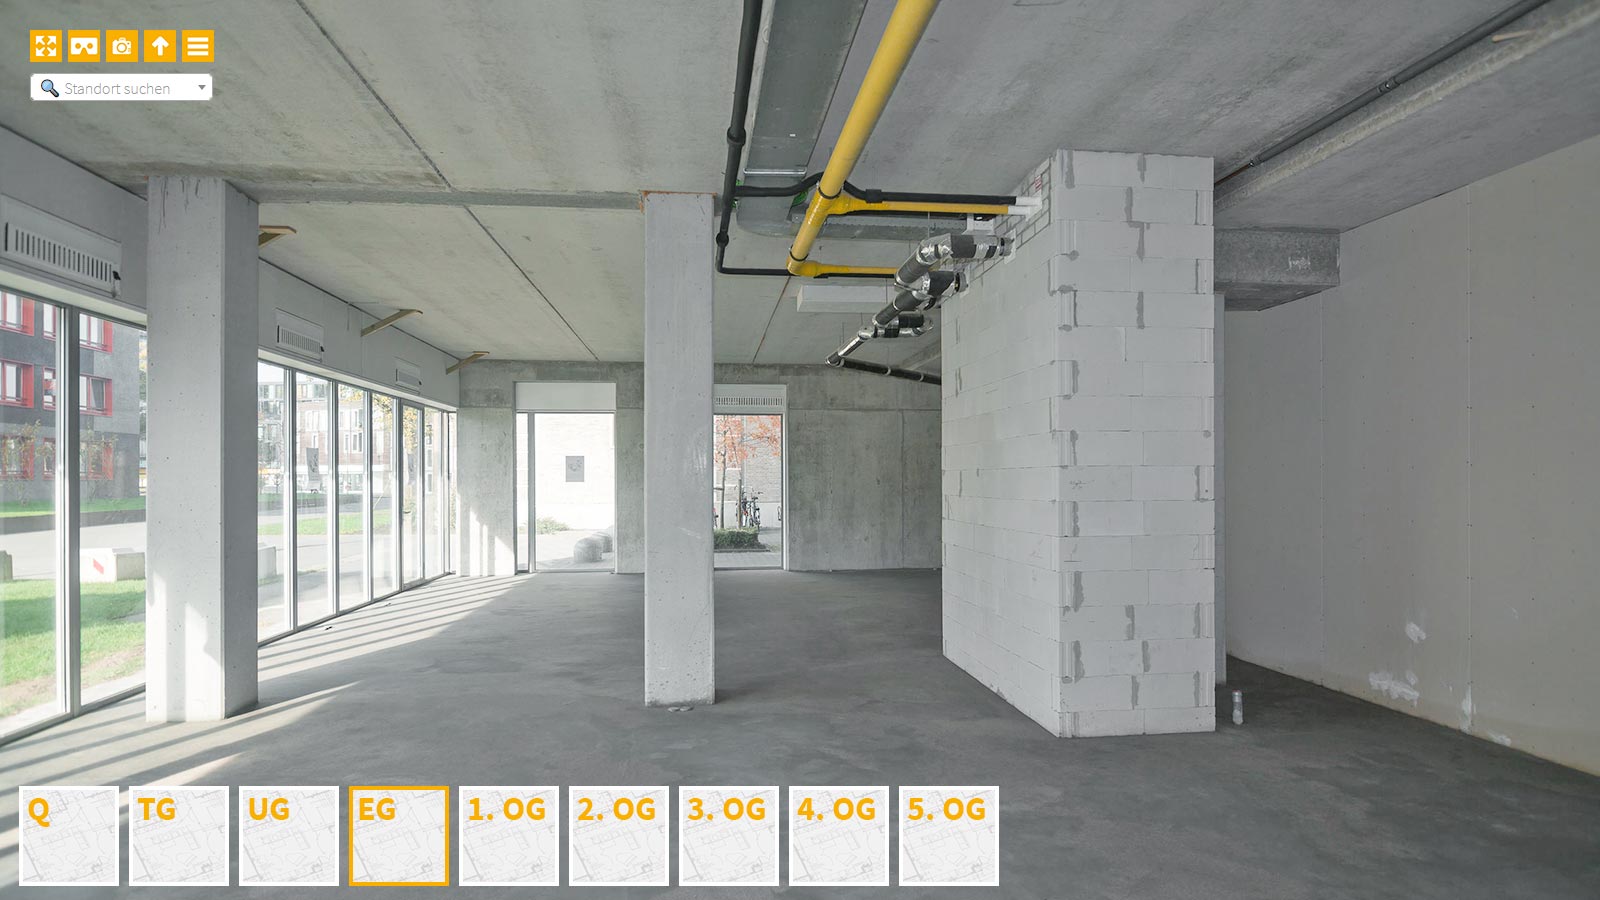 Baudokumentation 360 Grad bei gestörten Projekten in 


	


	


	


	


	


	


	


	


	


	Pforzheim









, Bilddokumentation als virtueller Rundgang